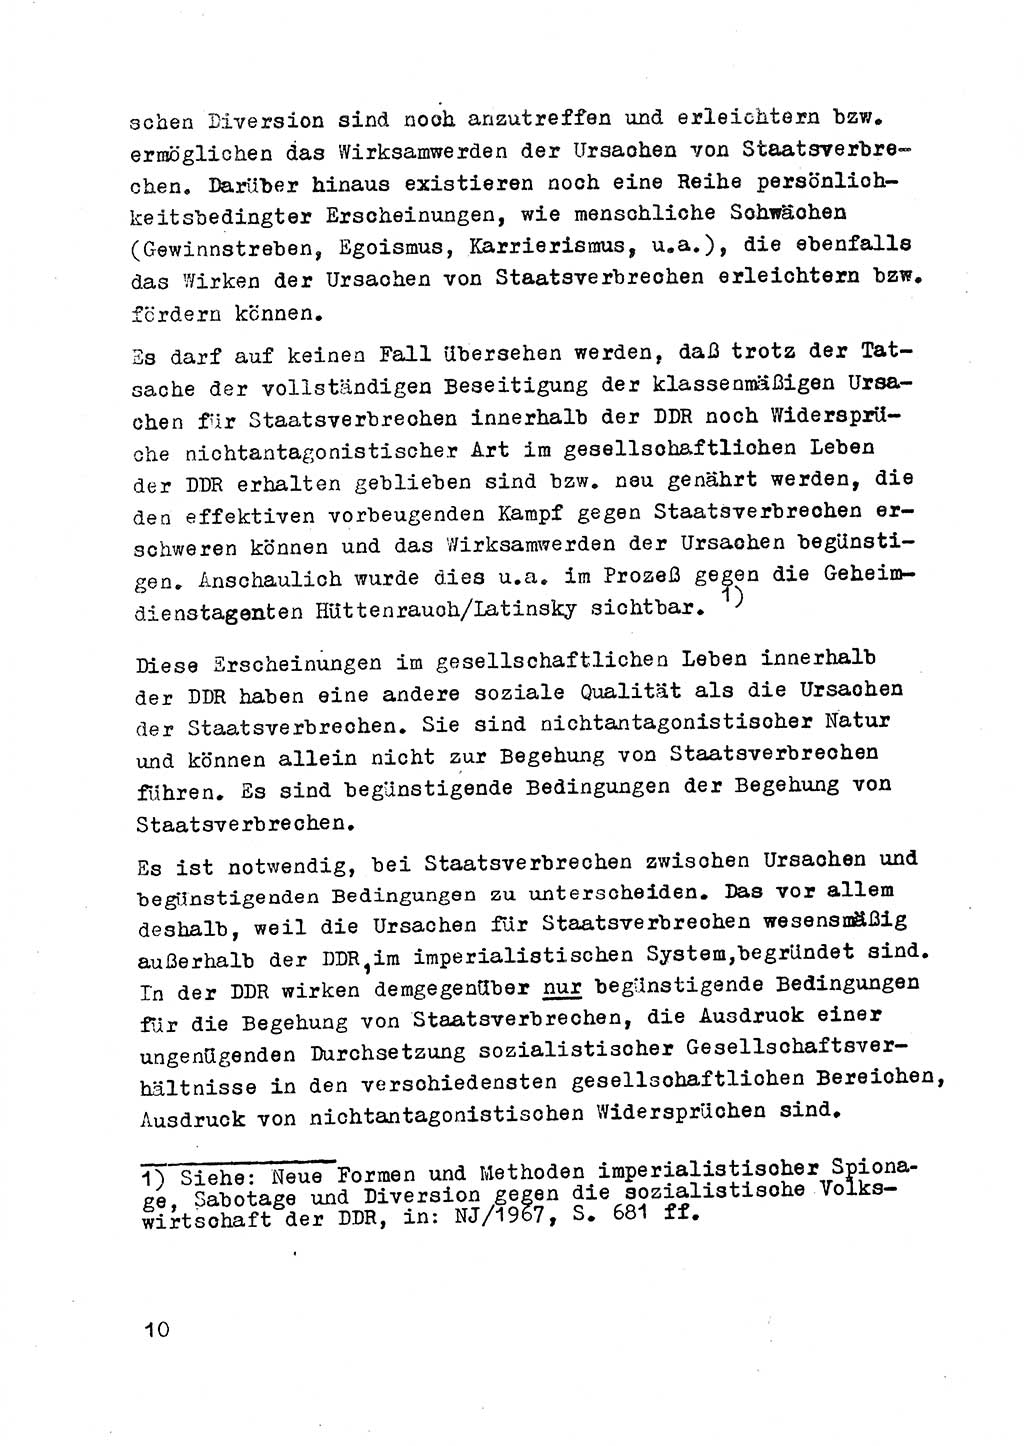 Strafrecht der DDR (Deutsche Demokratische Republik), Besonderer Teil, Lehrmaterial, Heft 2 1969, Seite 10 (Strafr. DDR BT Lehrmat. H. 2 1969, S. 10)